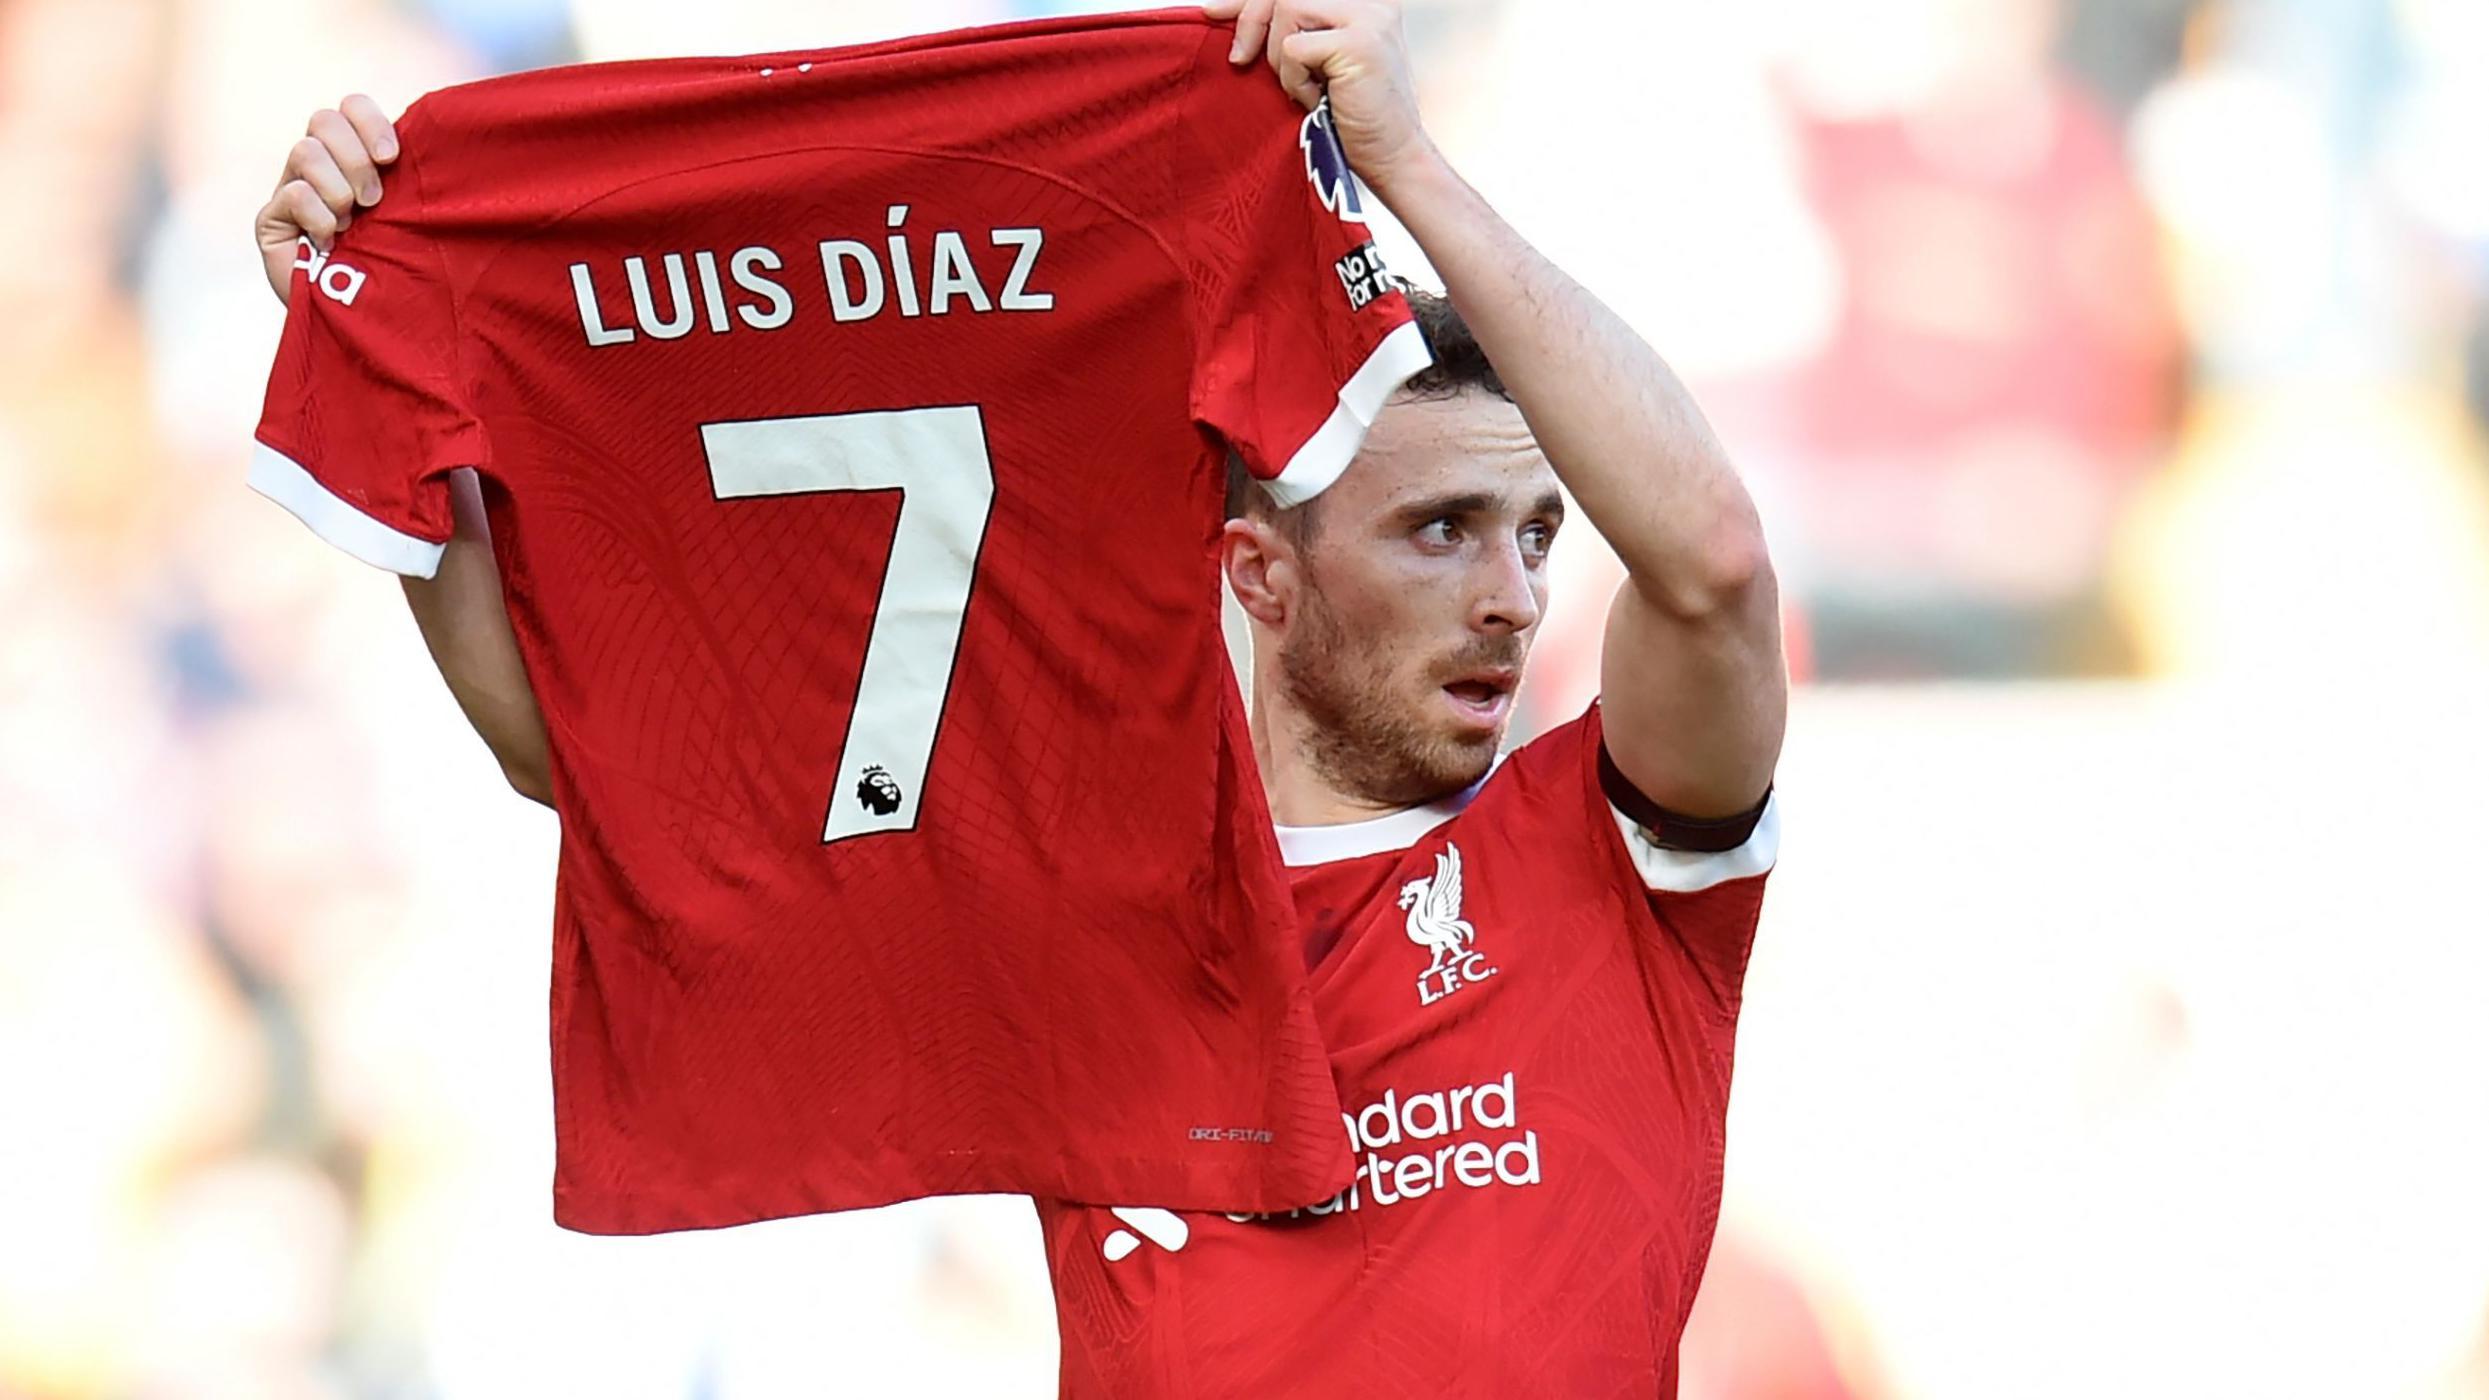 Jugador del Liverpool con la camiseta de Luis Díaz